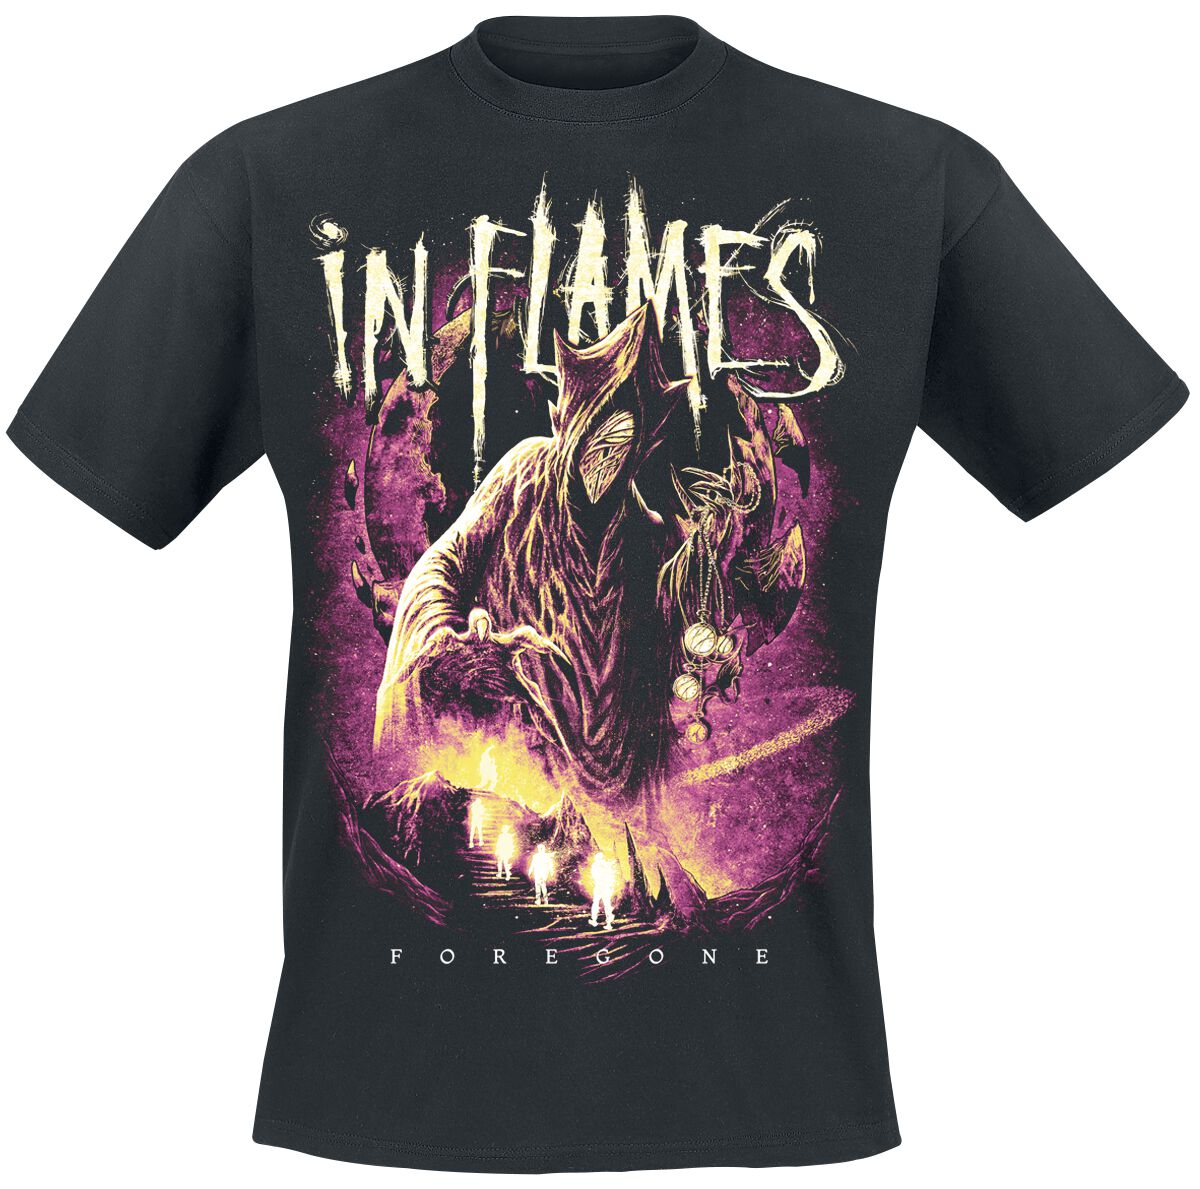 In Flames T-Shirt - Foregone Space - M bis 3XL - für Männer - Größe 3XL - schwarz  - Lizenziertes Merchandise!